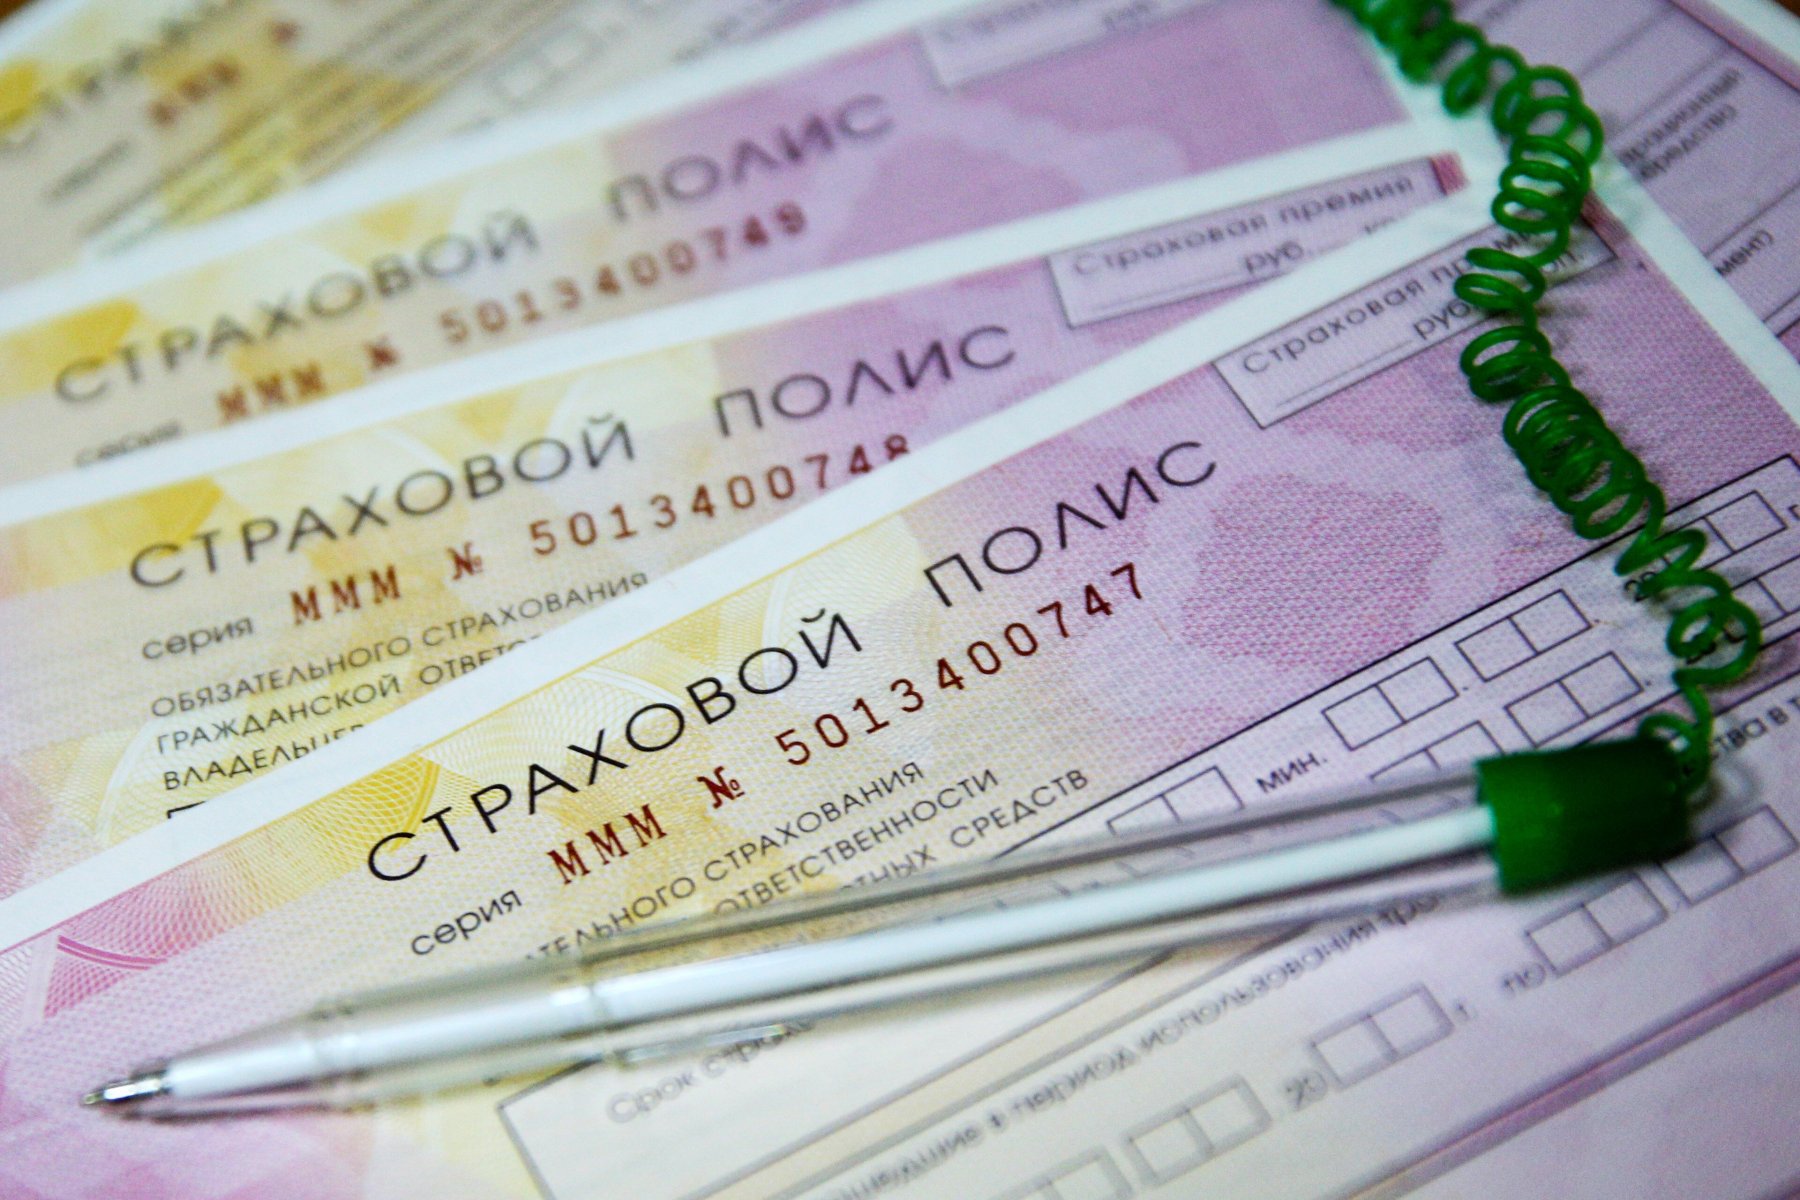 Минфин одобрил повышение штрафа за езду без полиса ОСАГО до 5 тысяч рублей